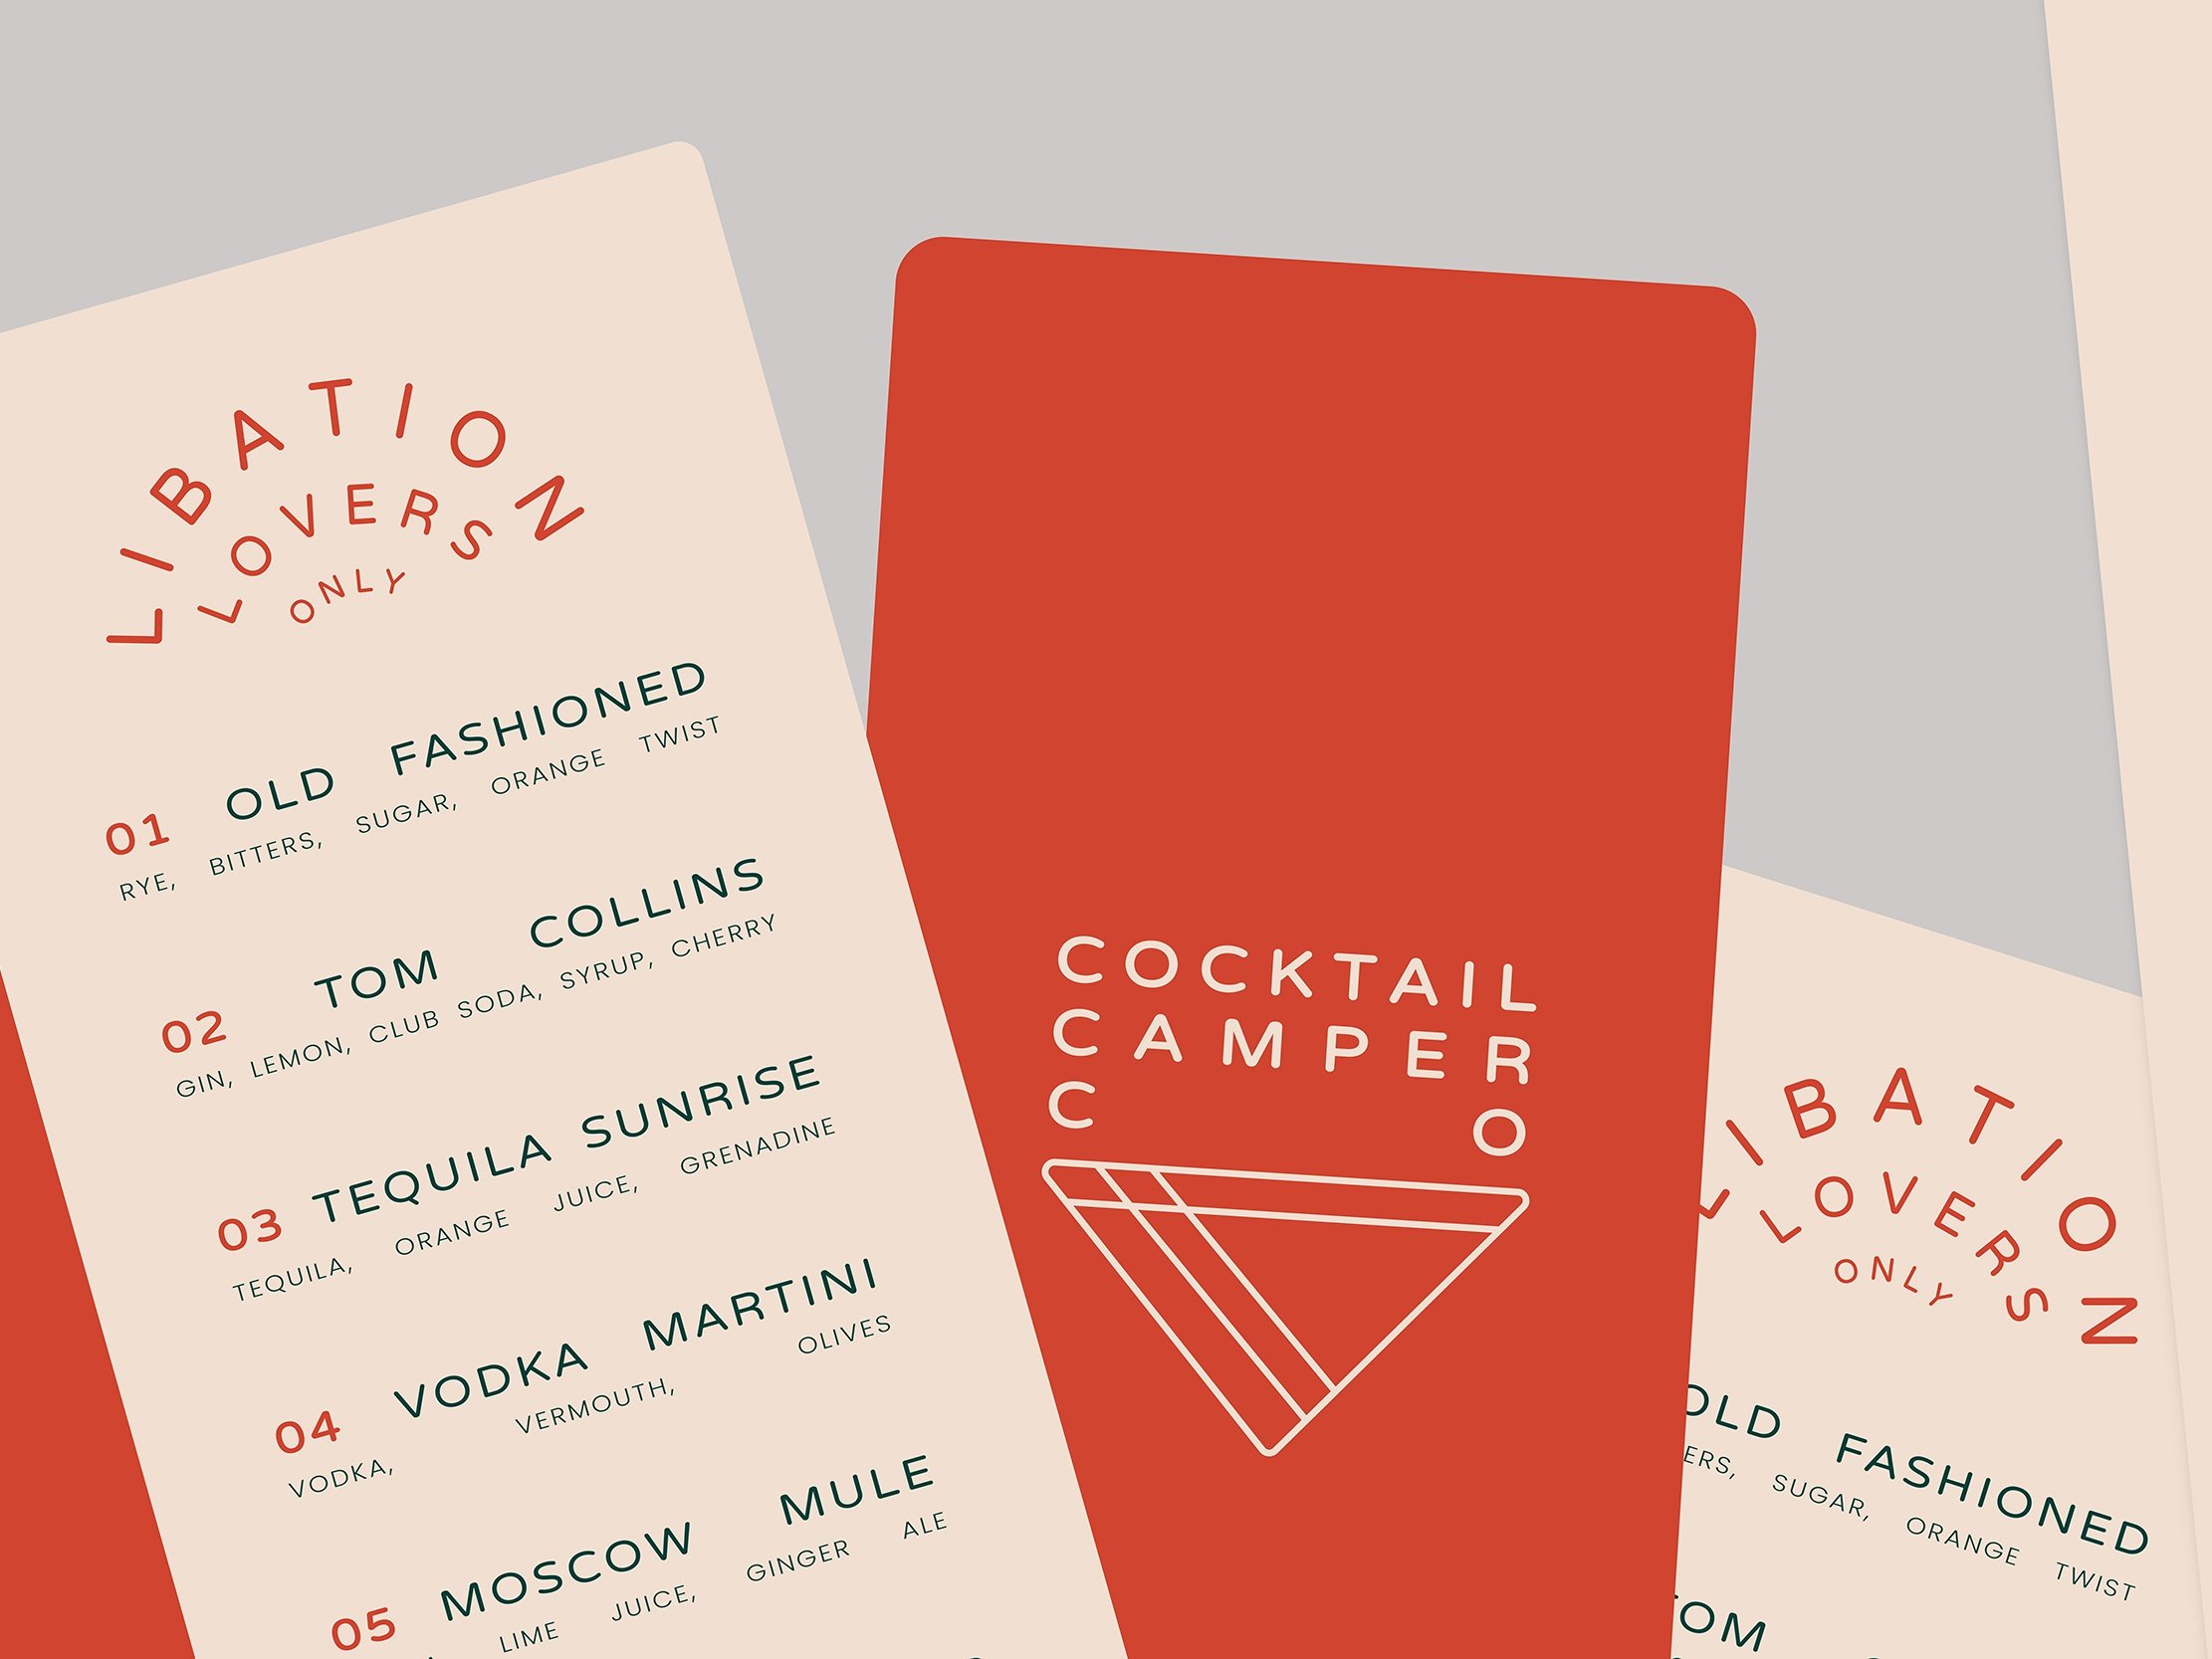  Cocktail Camper Co!.  Design:    Liz Sarn   i.  